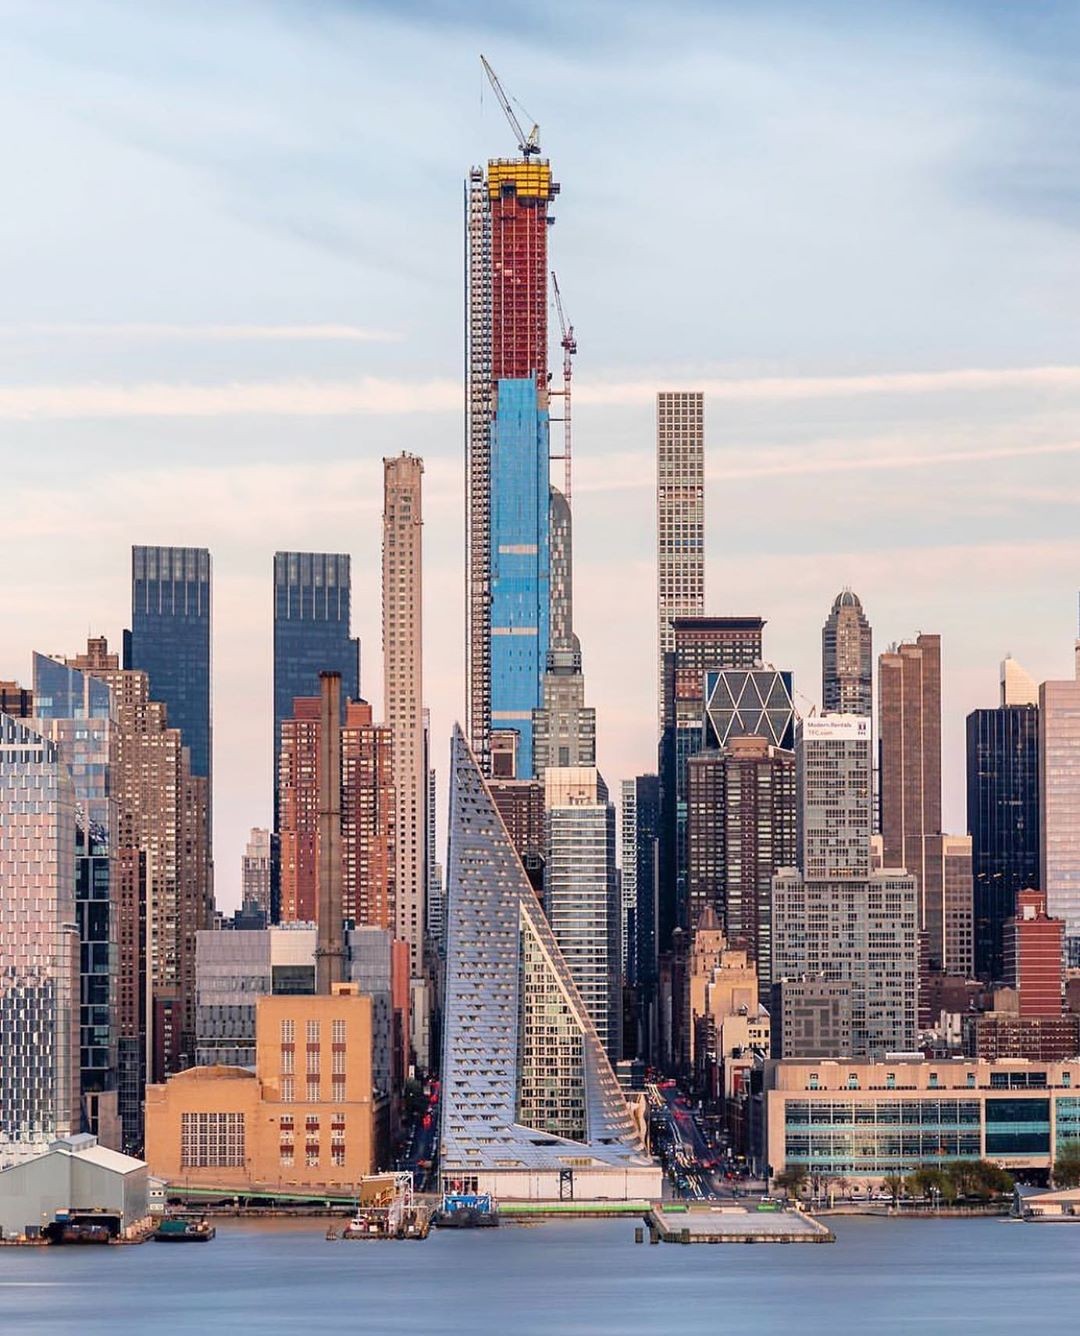 Torre em NY quebra recorde de telhado mais alto do ocidente (Foto: Divulgação)